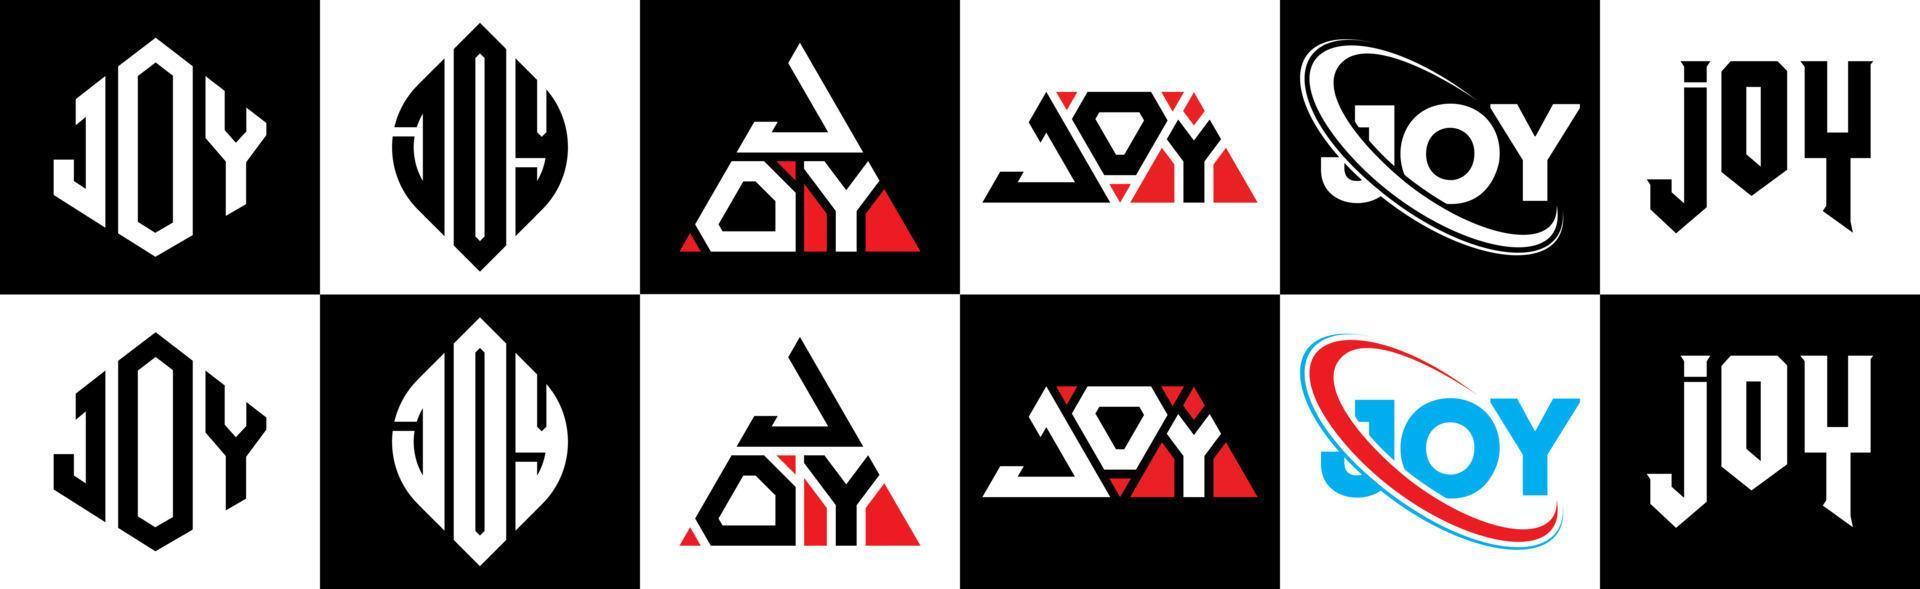 création de logo de lettre de joie dans six styles. polygone de joie, cercle, triangle, hexagone, style plat et simple avec logo de lettre de variation de couleur noir et blanc dans un plan de travail. joie logo minimaliste et classique vecteur